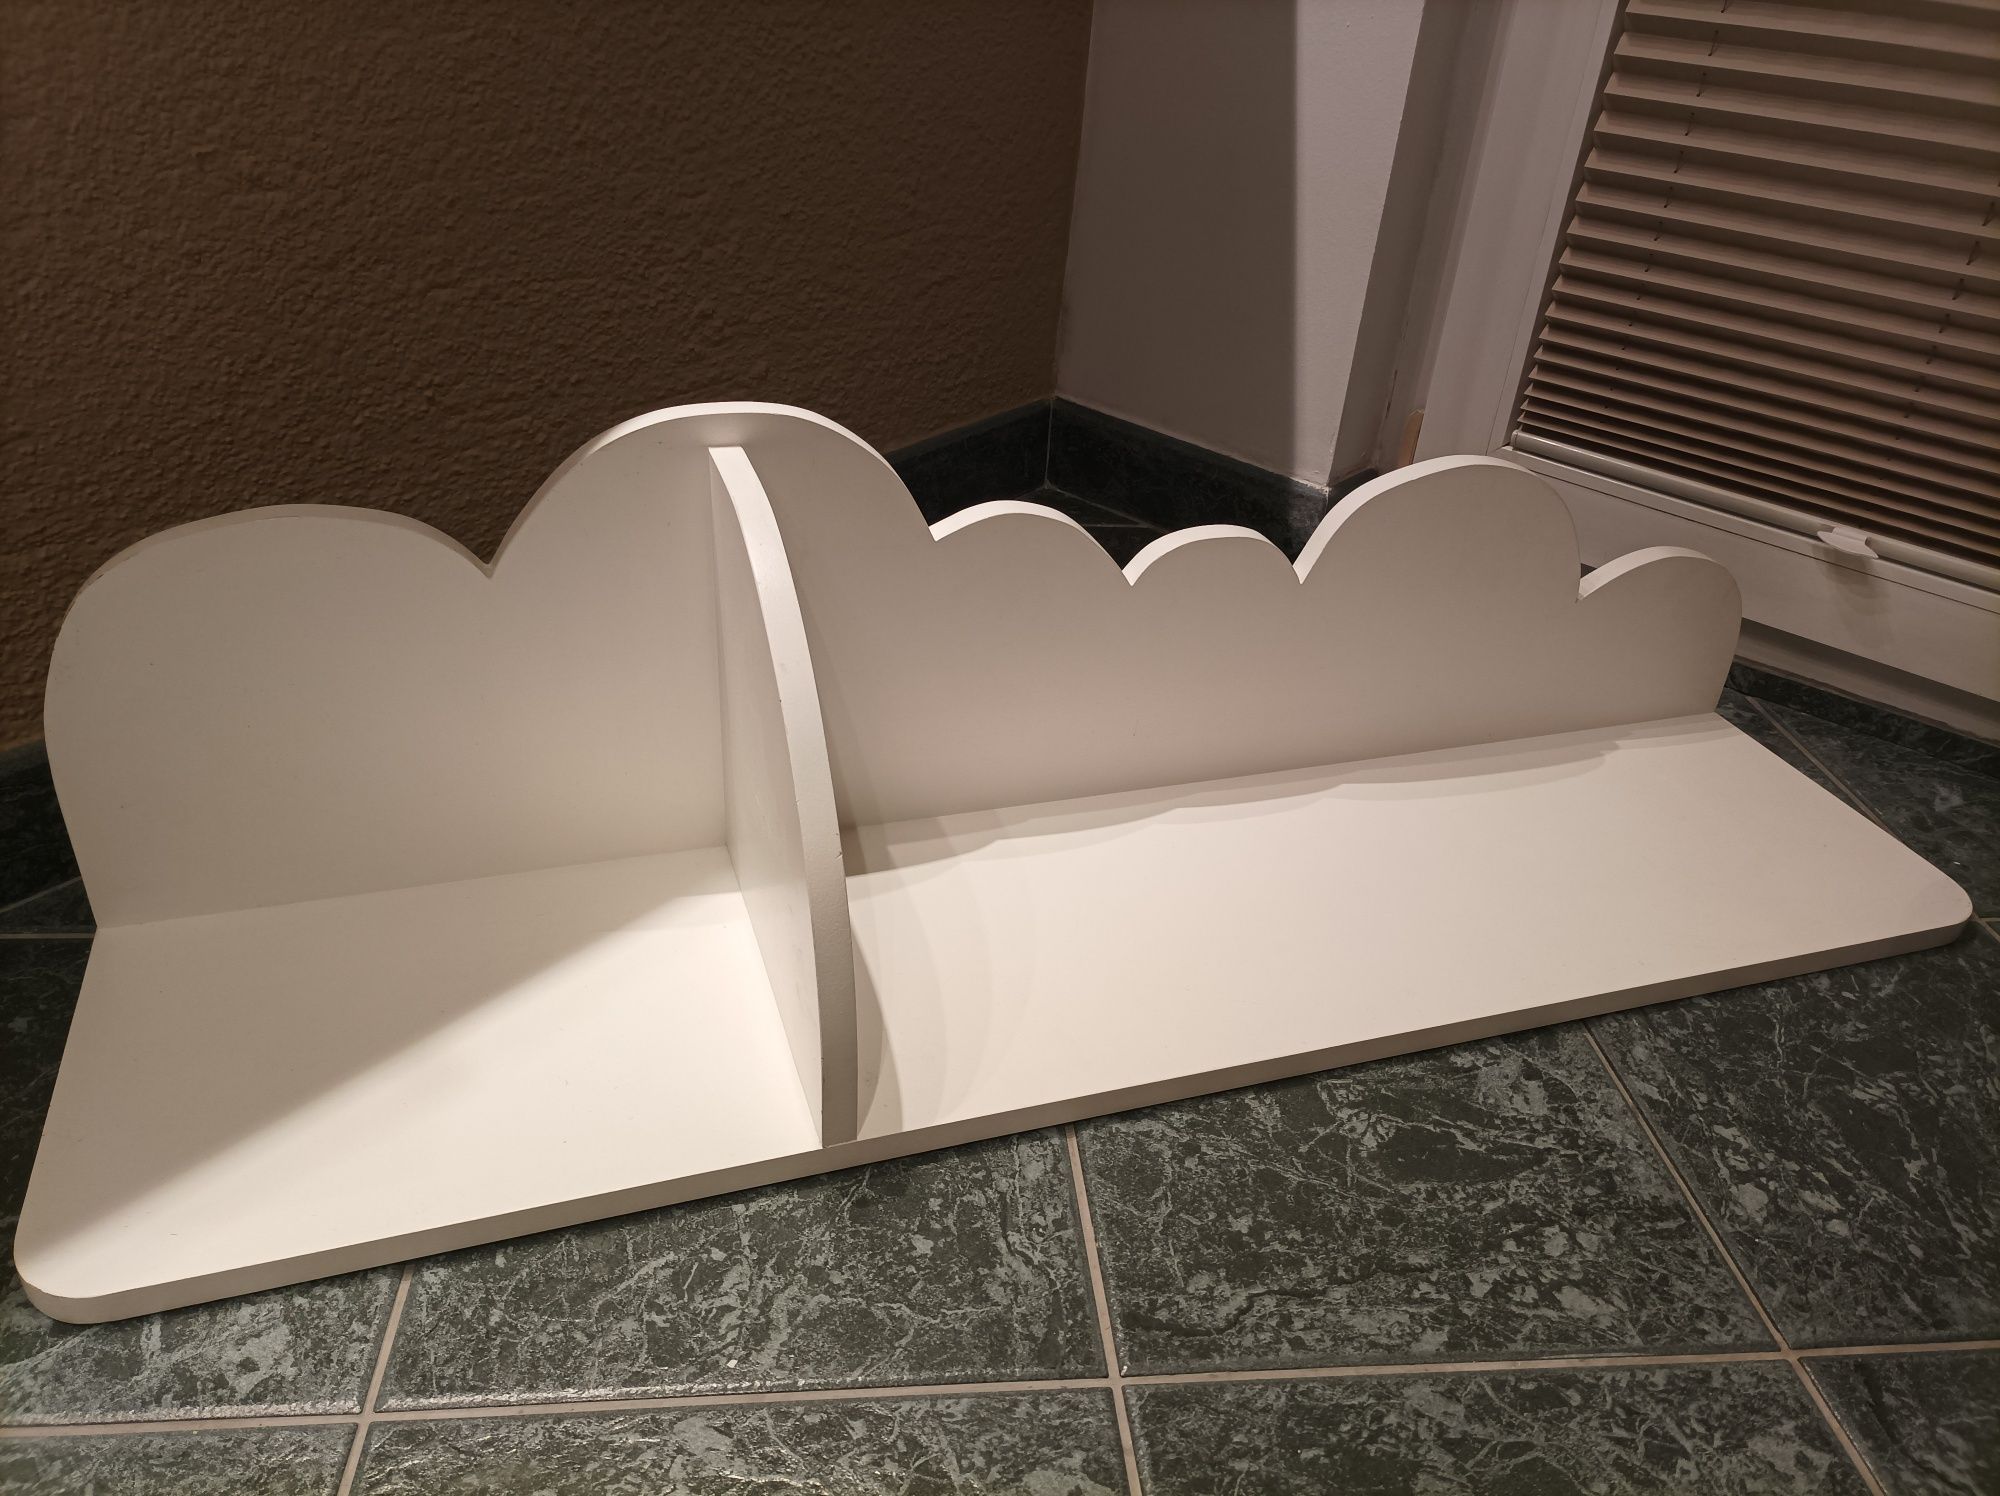 2 x duża półka w kształcie chmurki chmury chmurka